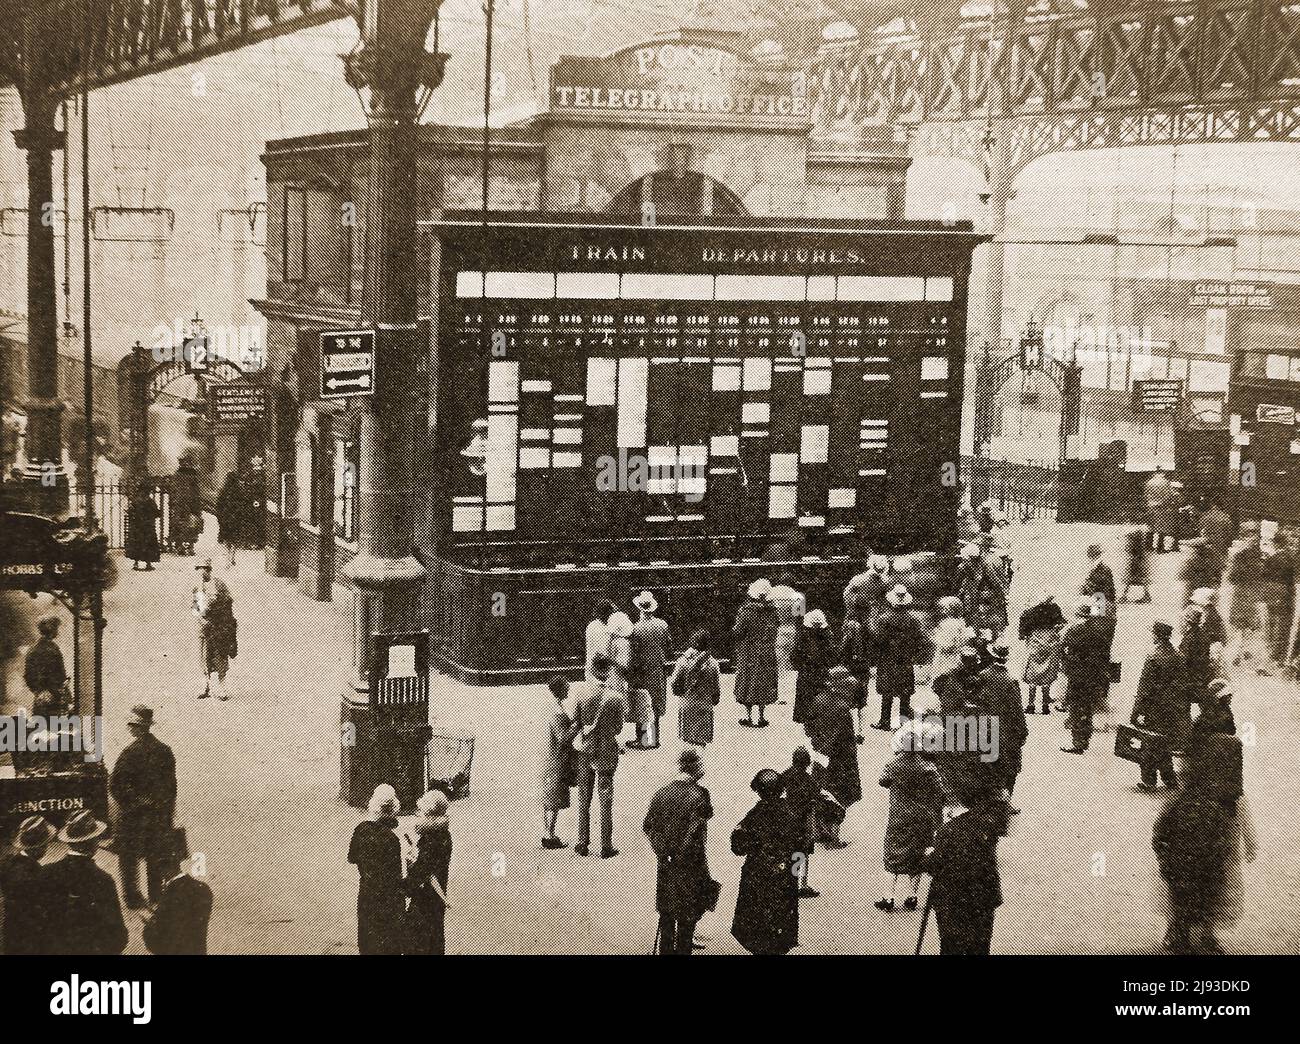 Ein frühes Foto der Informationstafel auf der Plattform des Victoria Railway Station, London, Großbritannien, mit dem Post Telegraph Office direkt dahinter Stockfoto